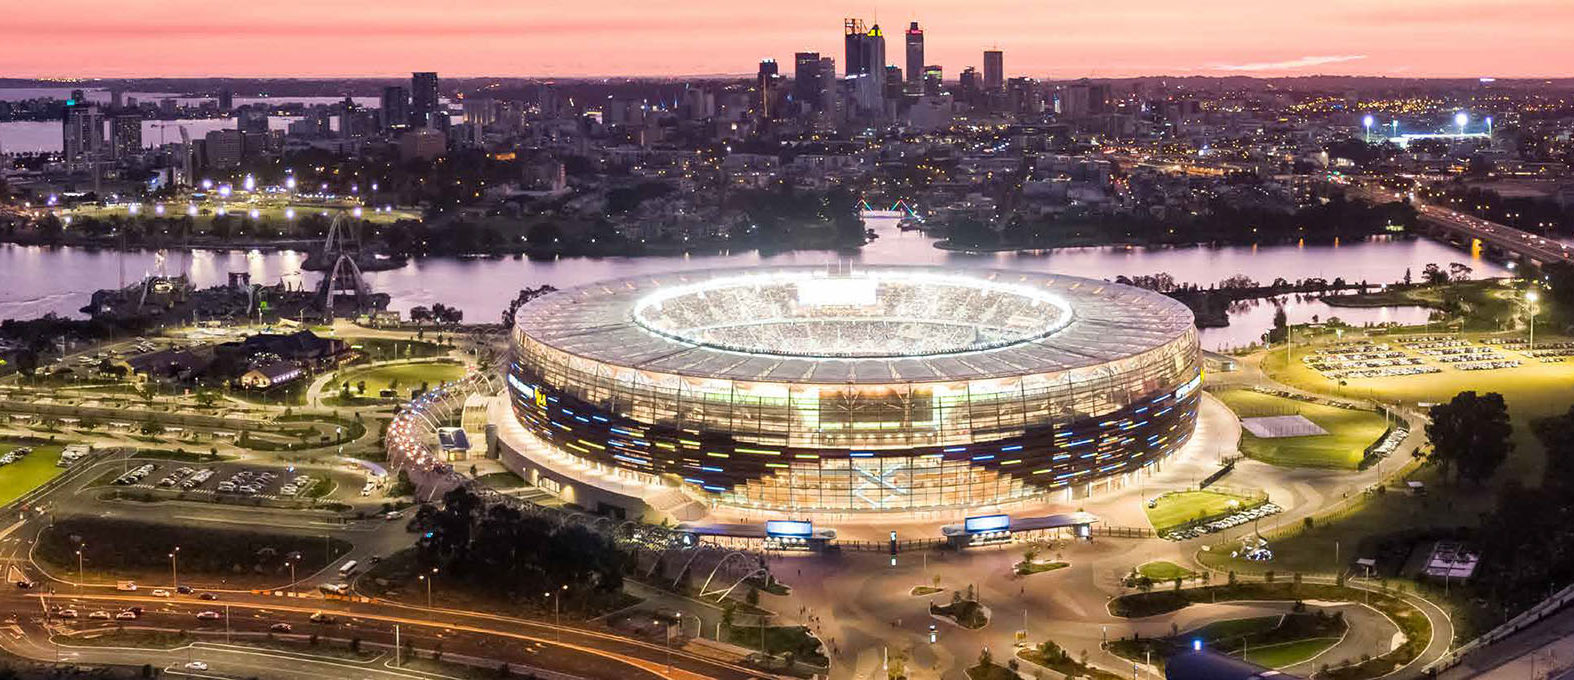 Stadium builds future prosperity – InfraBuild